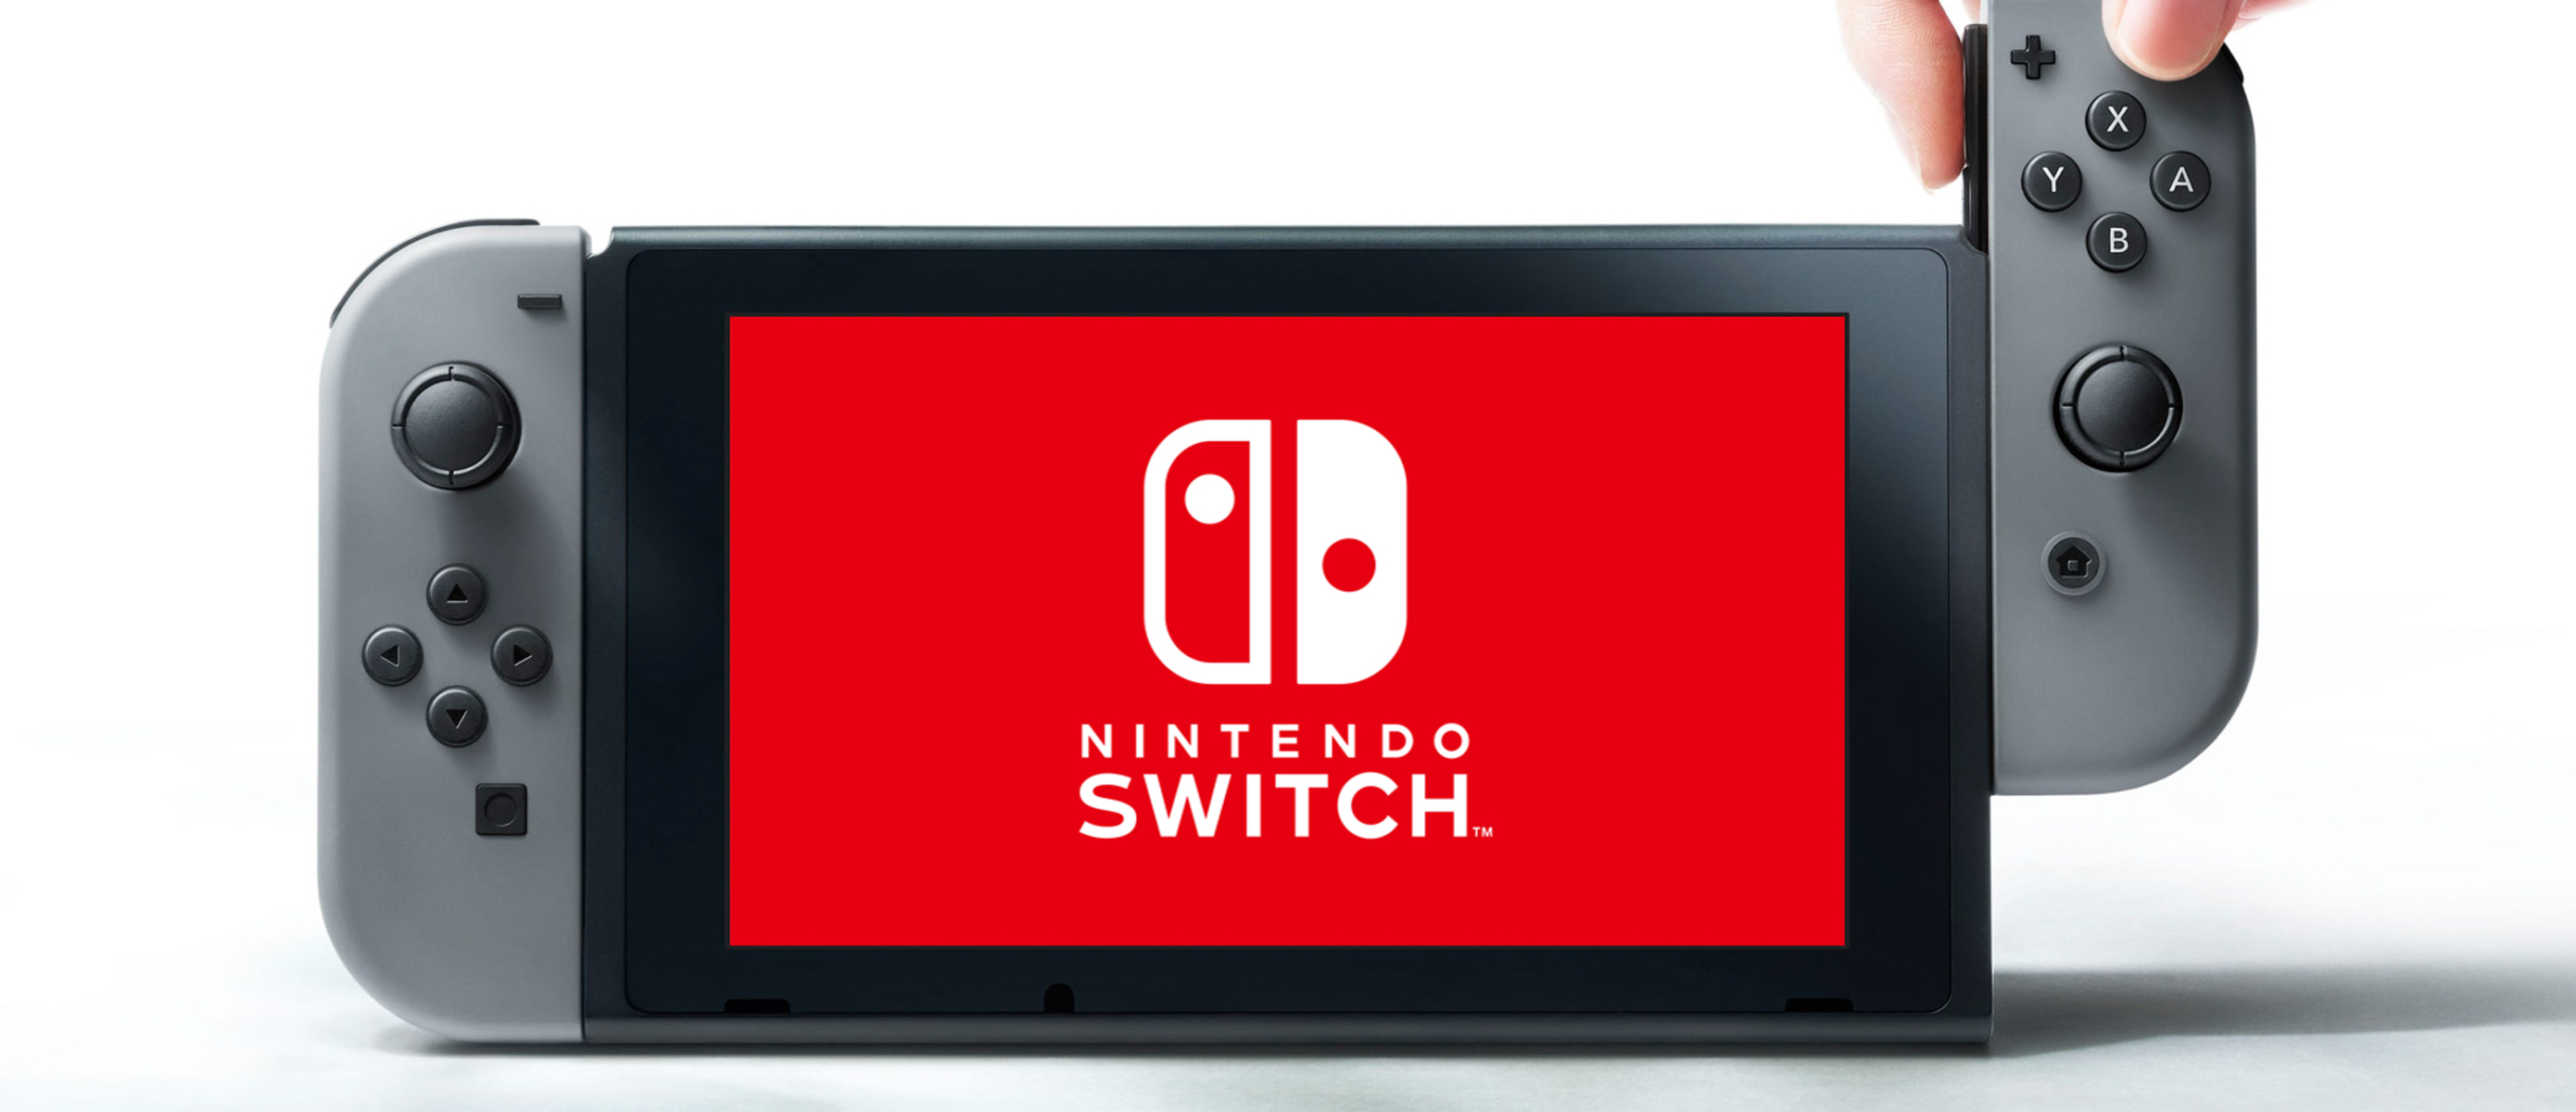 Nintendo новинки. Приставка Нинтендо свитч. Нинтендо свитч модели. Нинтендо свитч 258. Консоли лого Nintendo Switch.